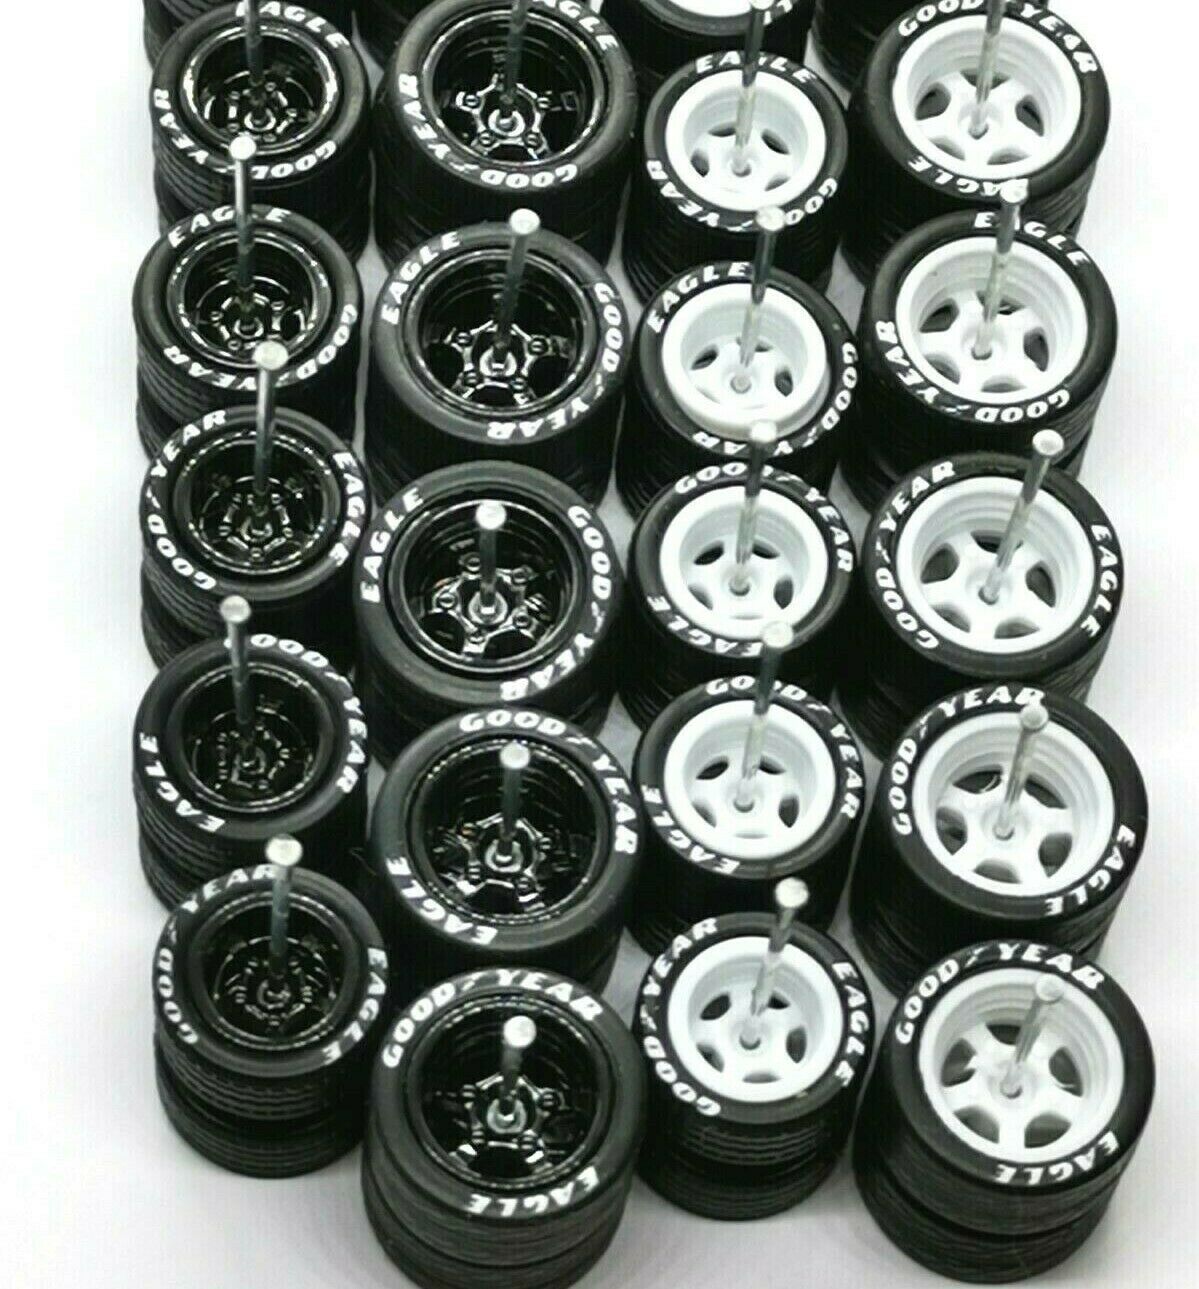 10 sets JDM Black Red Line Hot Wheels 4 Spoke Long Axle Rubber Tire